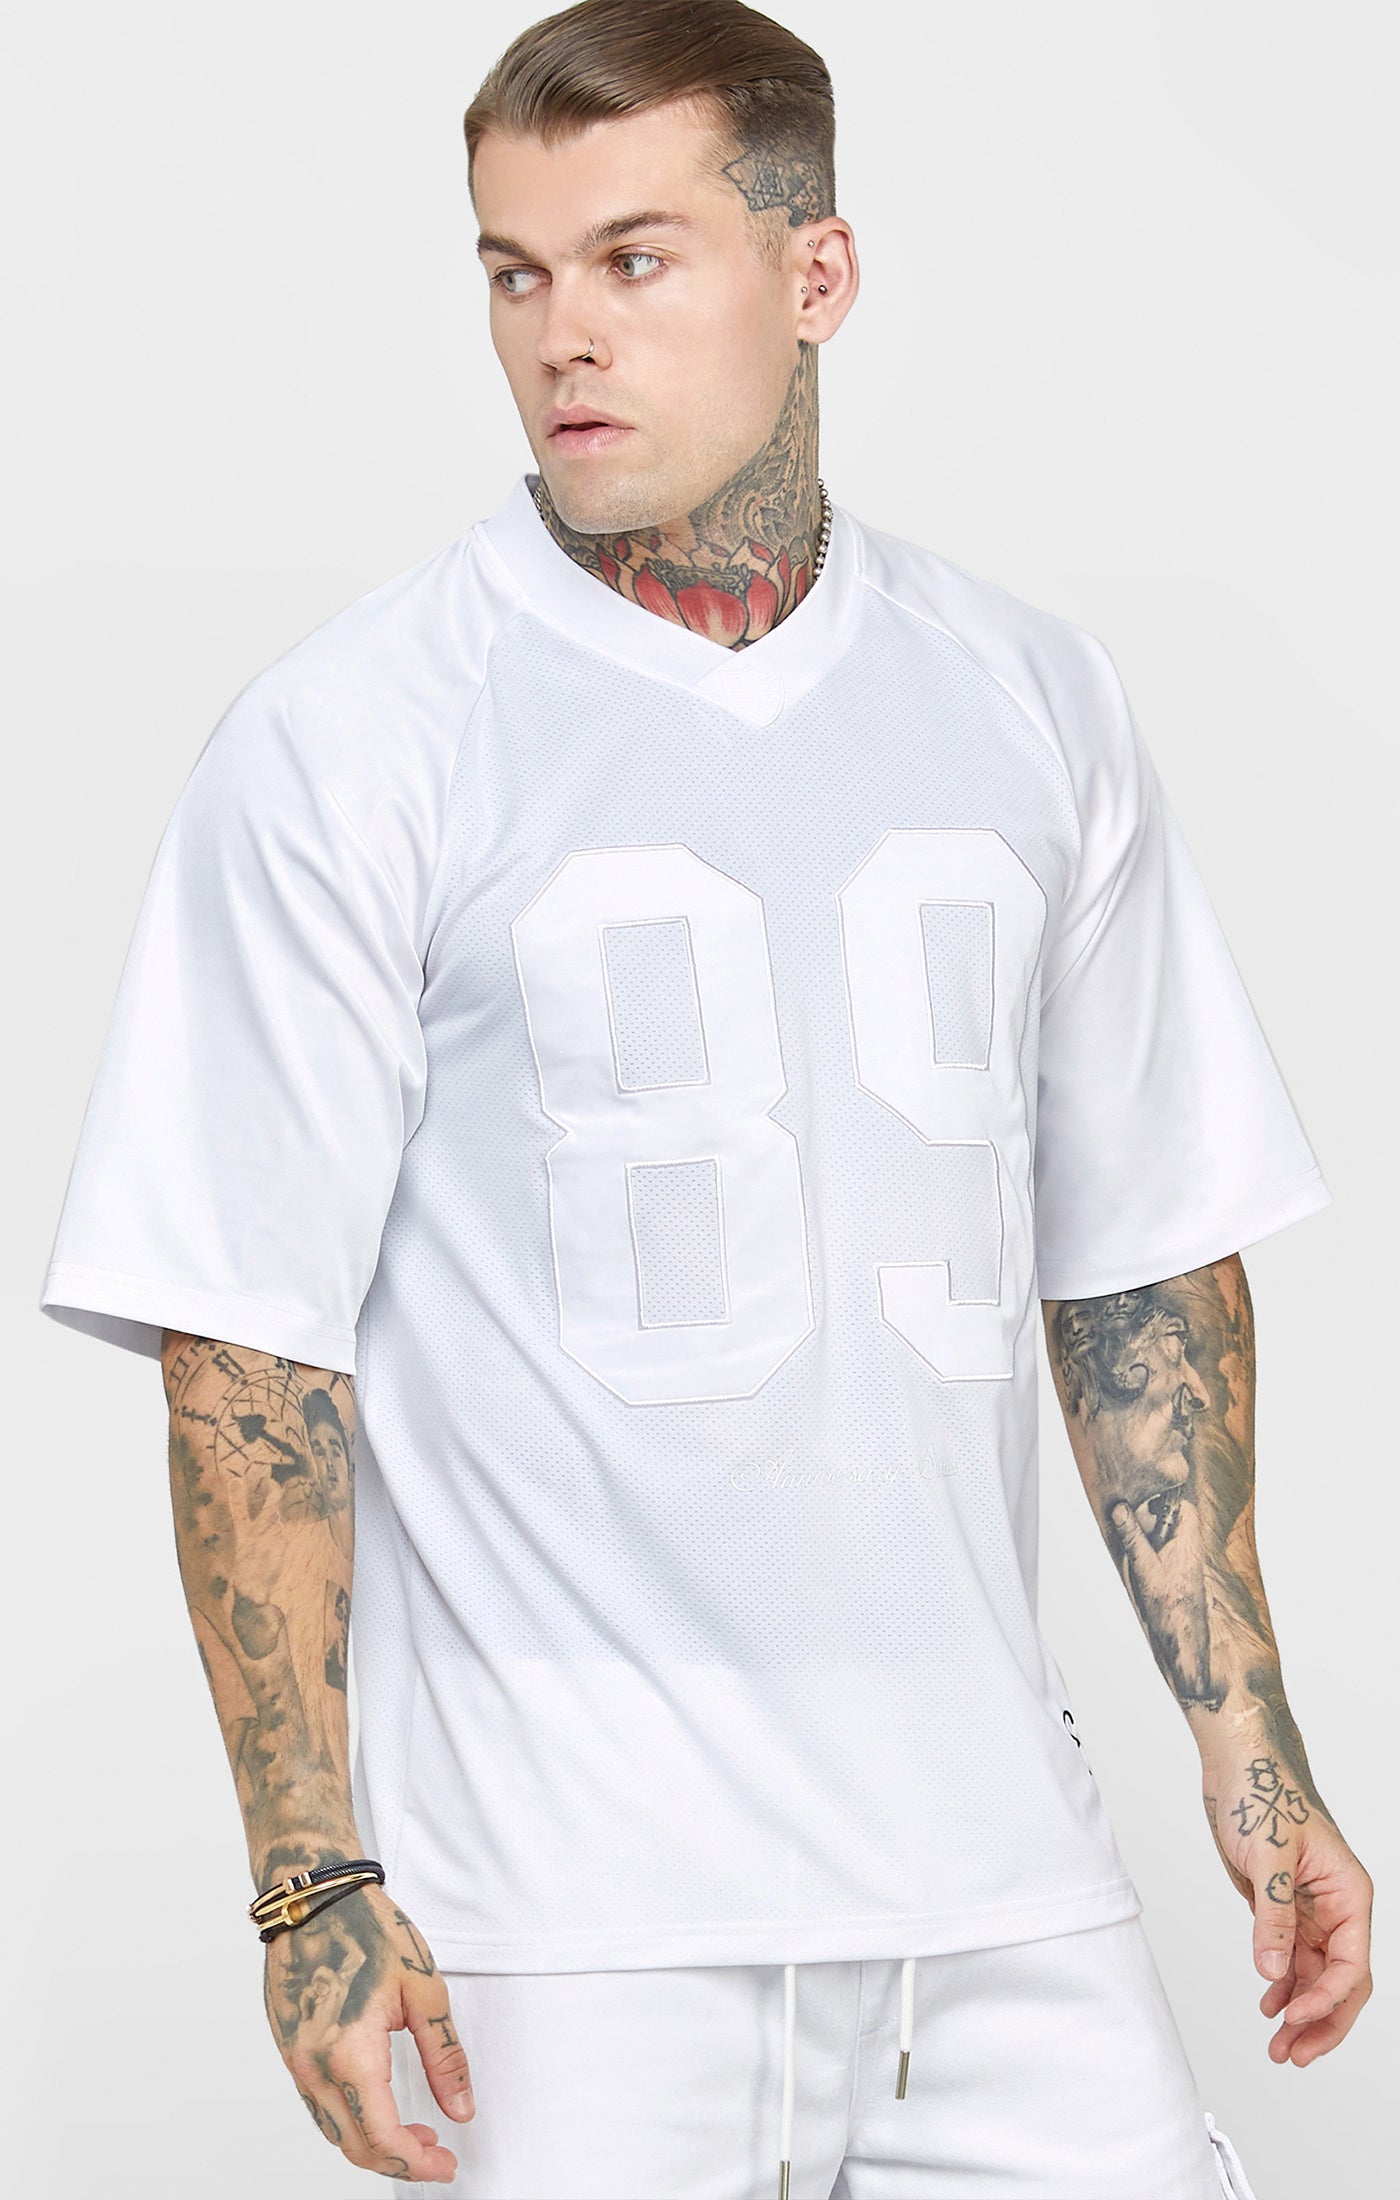 Weißes Retro T-Shirt in Übergröße